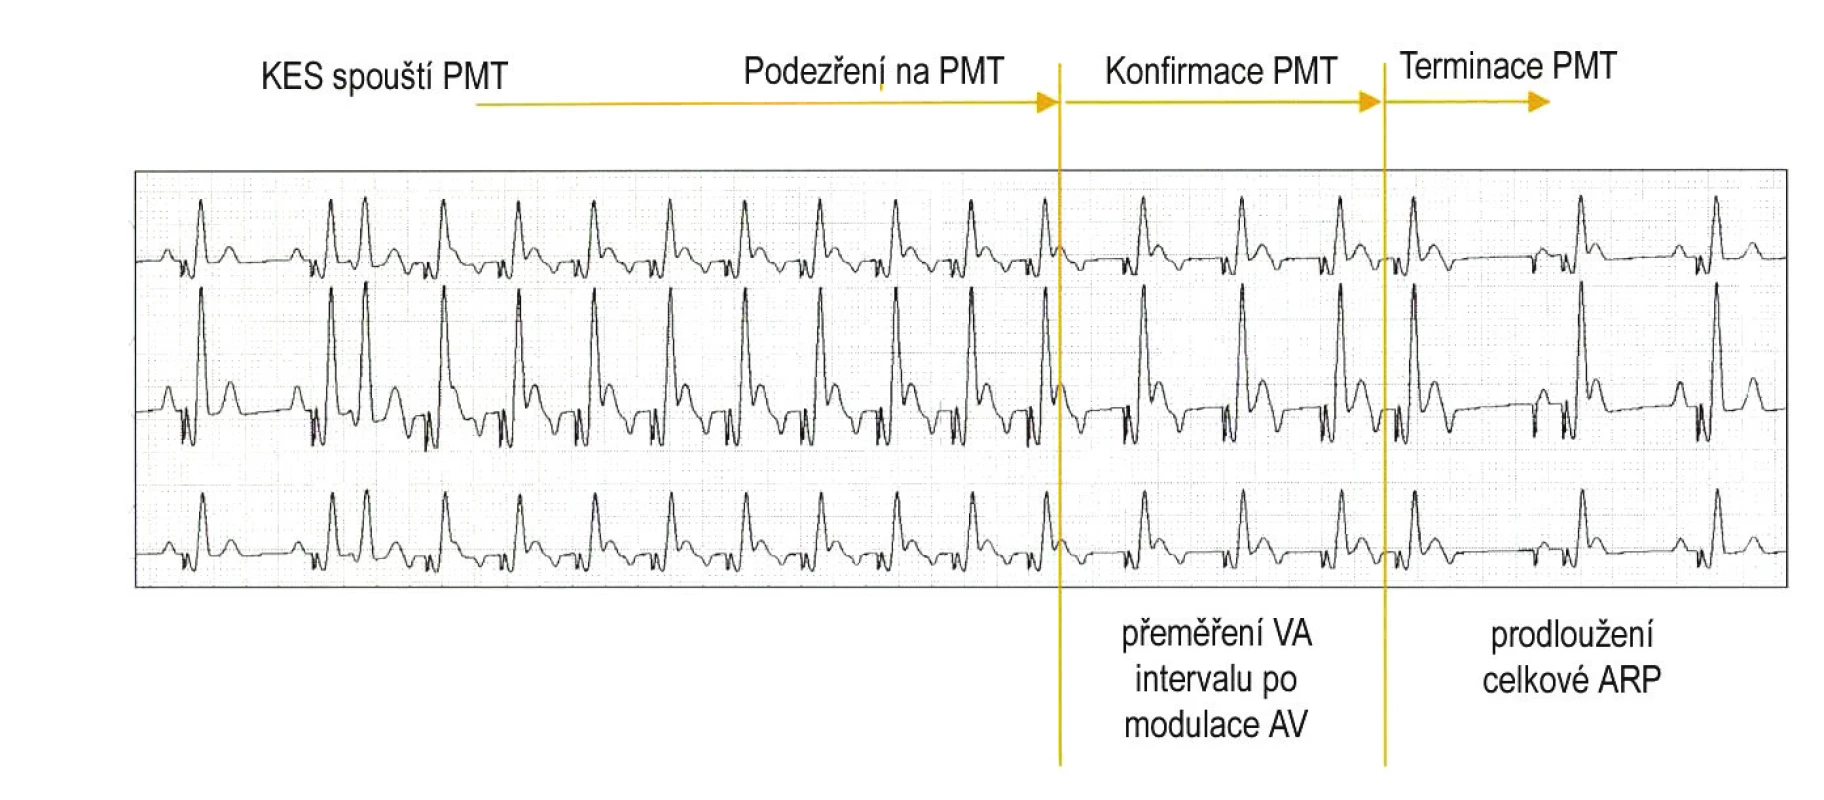 Pacemakerová tachykardie spuštěná komorovou extrasystolou je detekována po 8 konsekutivních stazích se stabilním VA-intervalem stimulace komor spouštěné síněmi (podezření na PMT). Potvrzení (konfirmace) je provedeno přeměřením VA-intervalu po modulaci (zkrácení či prodloužení) AV delay. Pokud je PMT potvrzena, je jednorázovým prodloužením atriální refrakterní periody (ARP) docíleno časování retrográdního P do refrakterity, a tím terminace PMT. (zdroj: Biotronik Philos II. Výukový materiál)